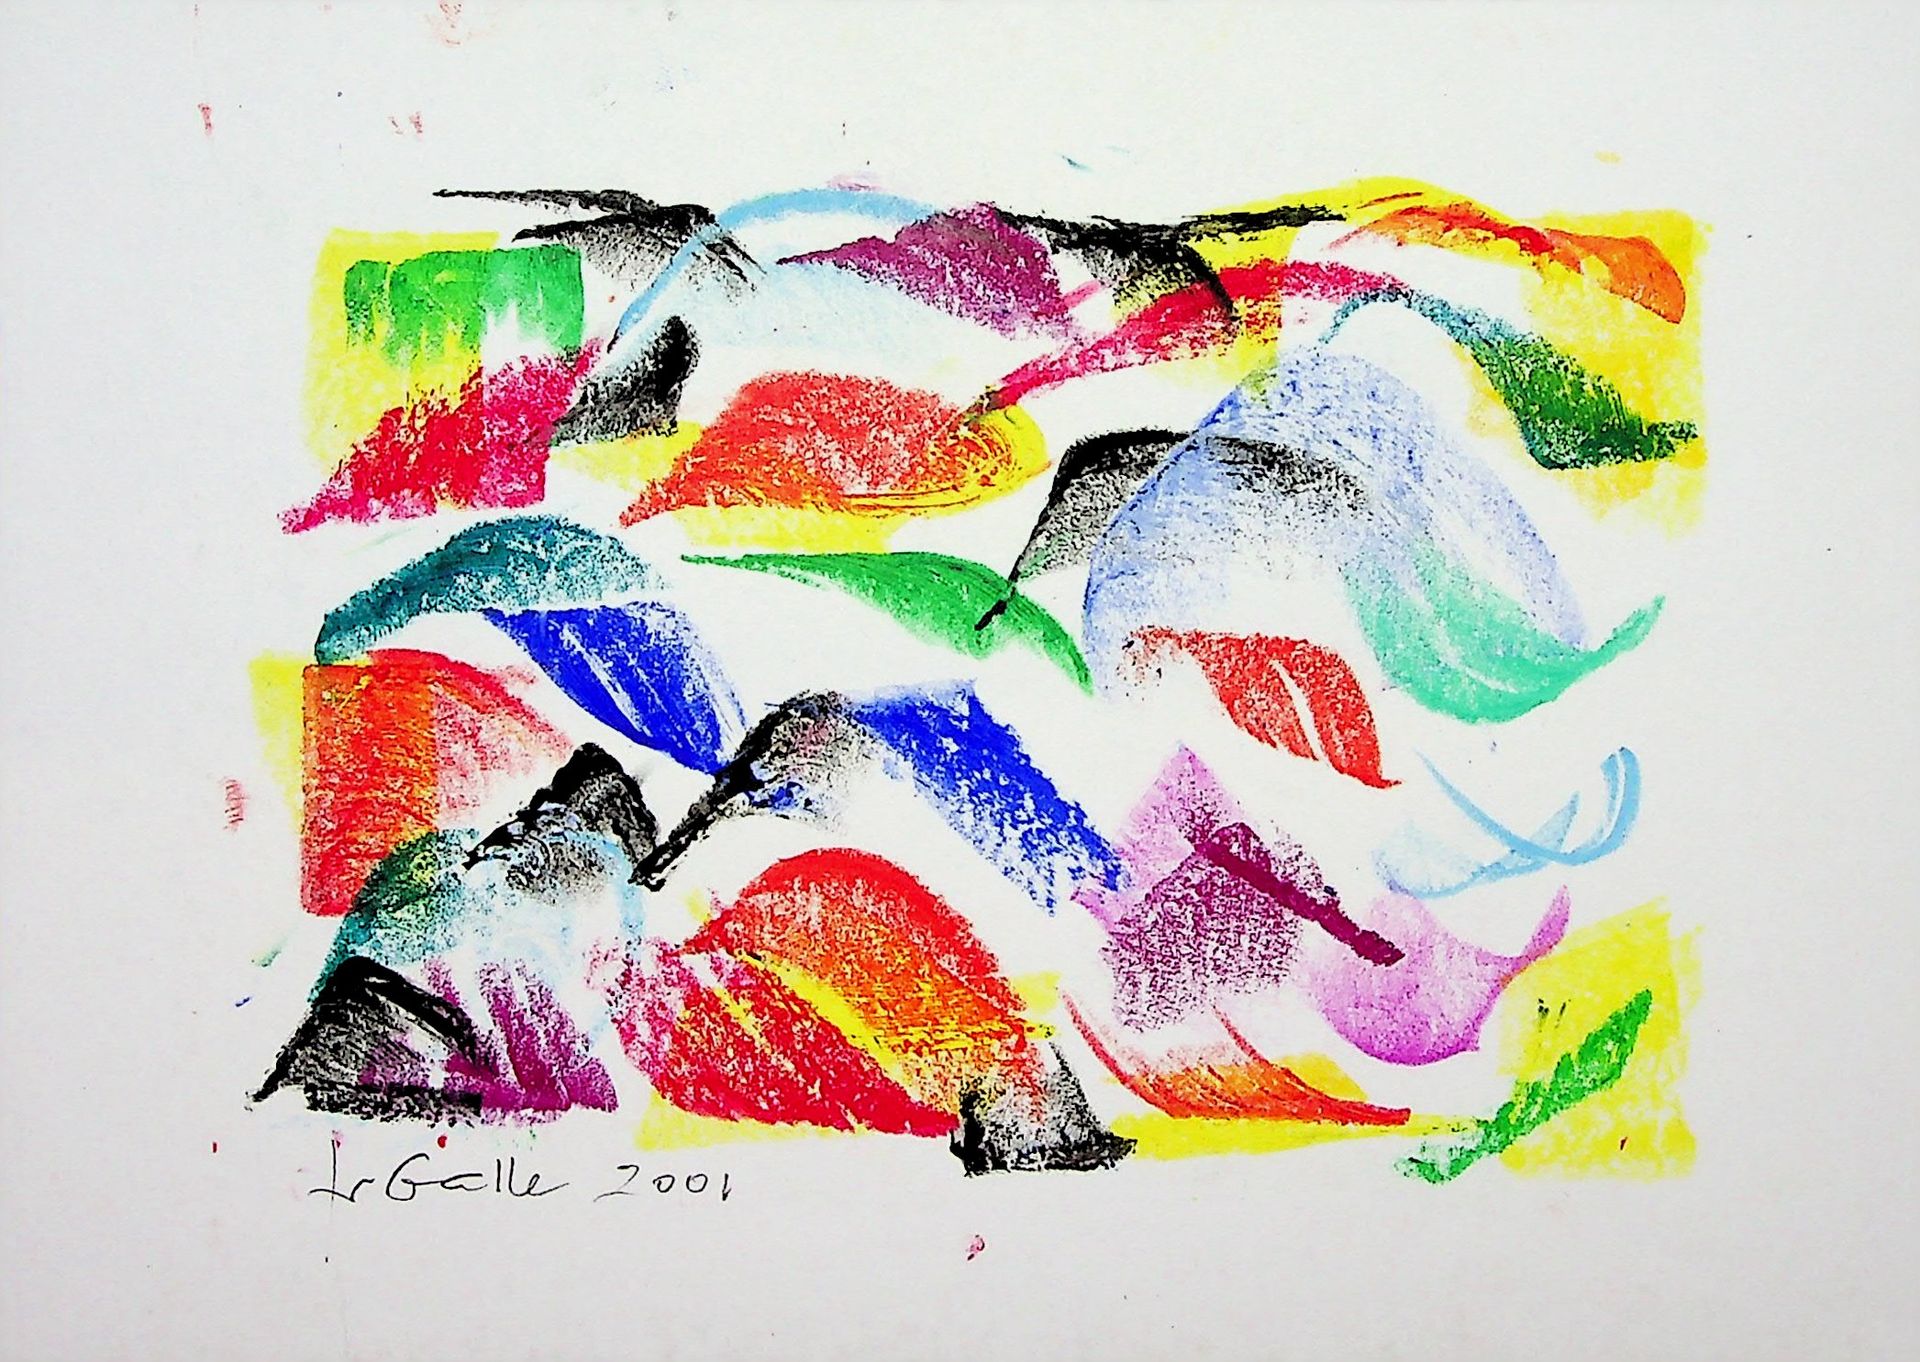 Françoise Galle 弗朗索瓦丝-加勒 (1940)

浮士德沙丘, 2001

纸上混合媒体、水粉和粉彩

底部有艺术家的签名和日期

厚纸上 13&hellip;